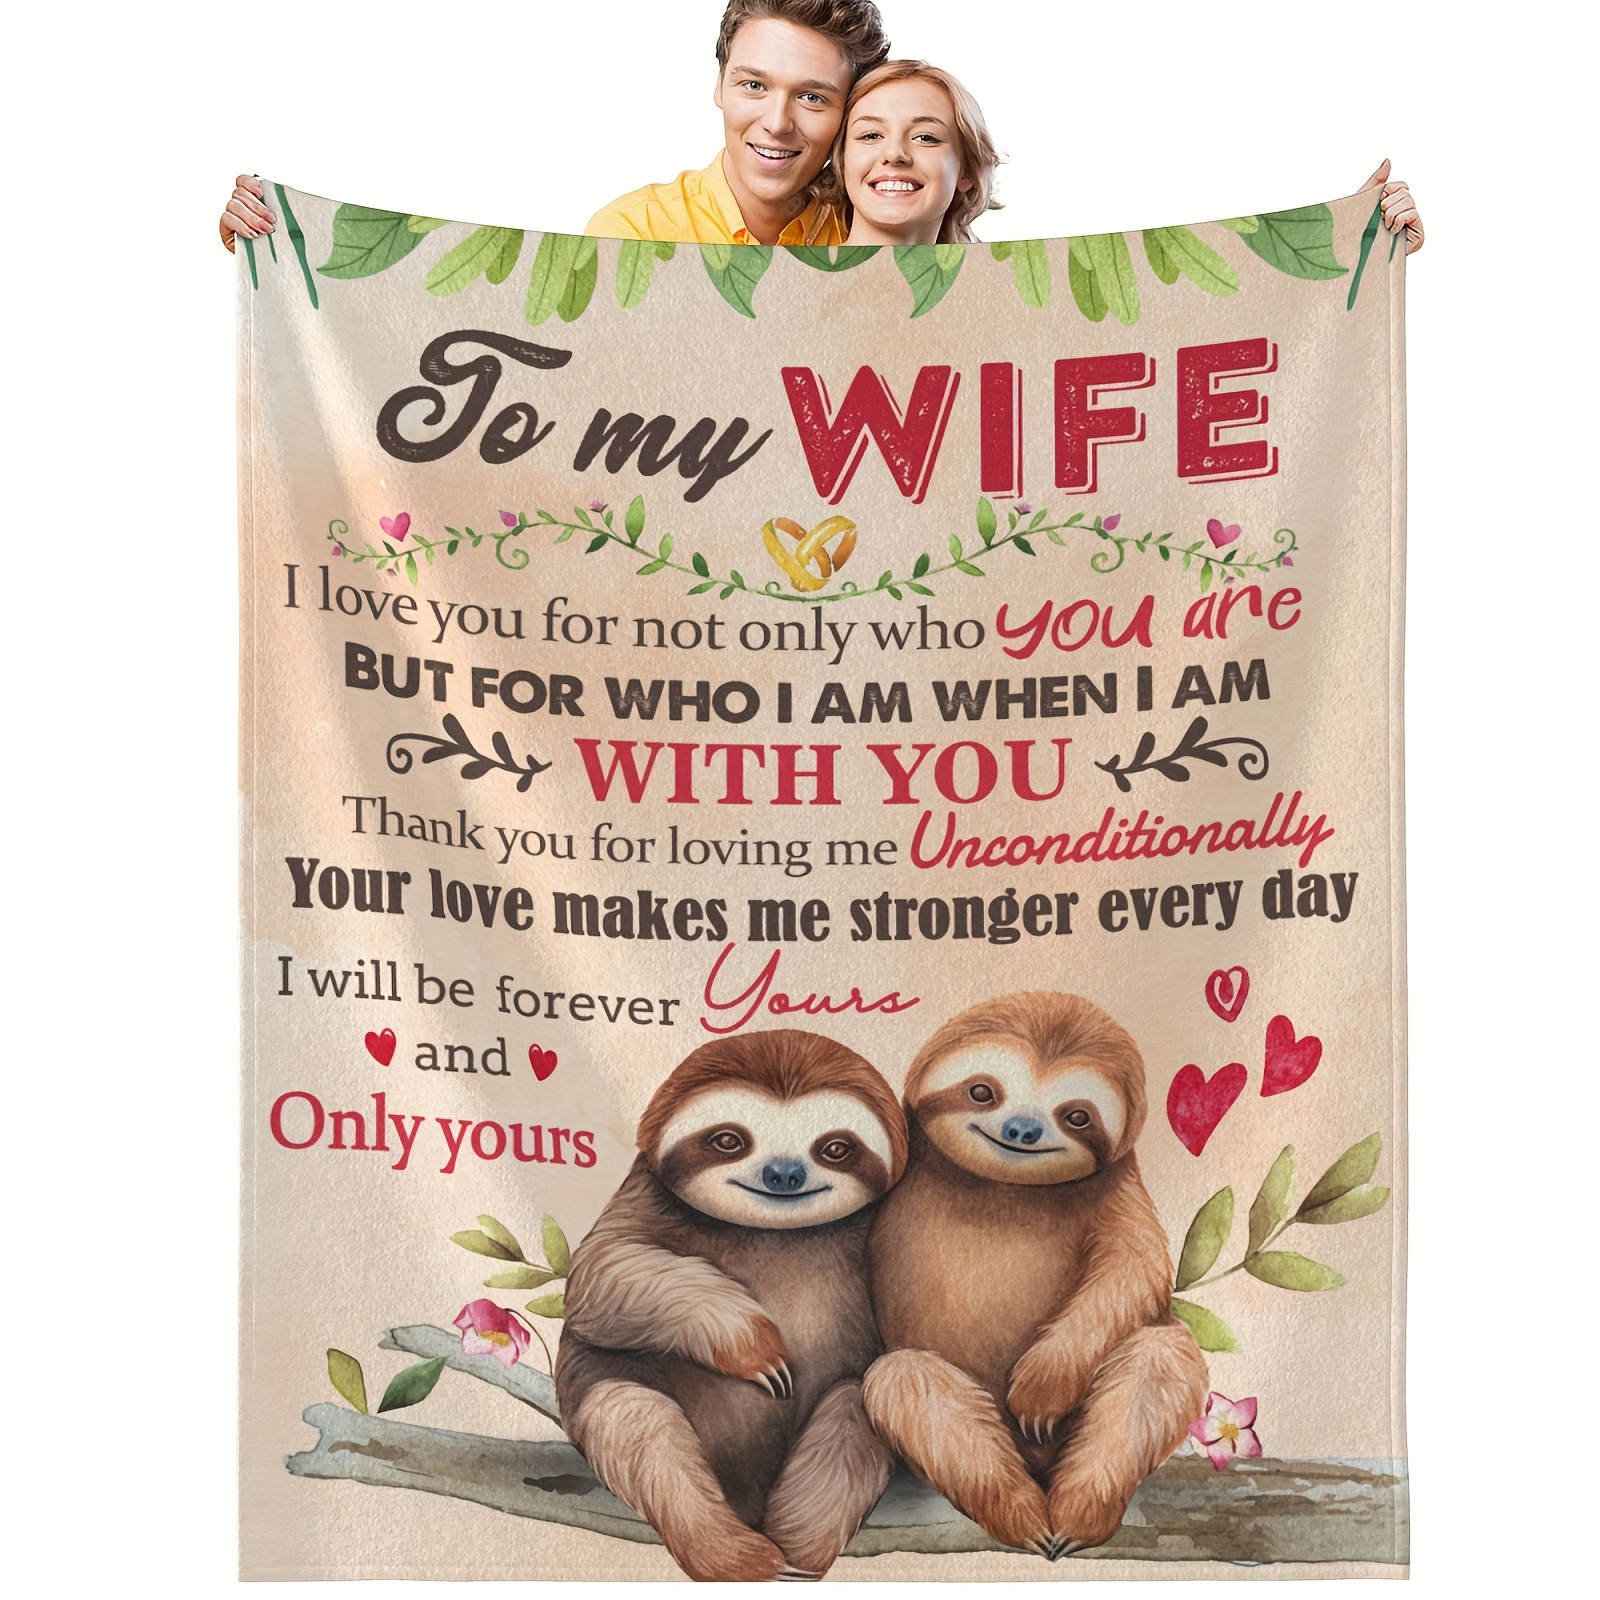 Comprar Para mi marido/hija/hijo, regalos de amor, mantas personalizadas,  mantas de franela, colcha suave para cama